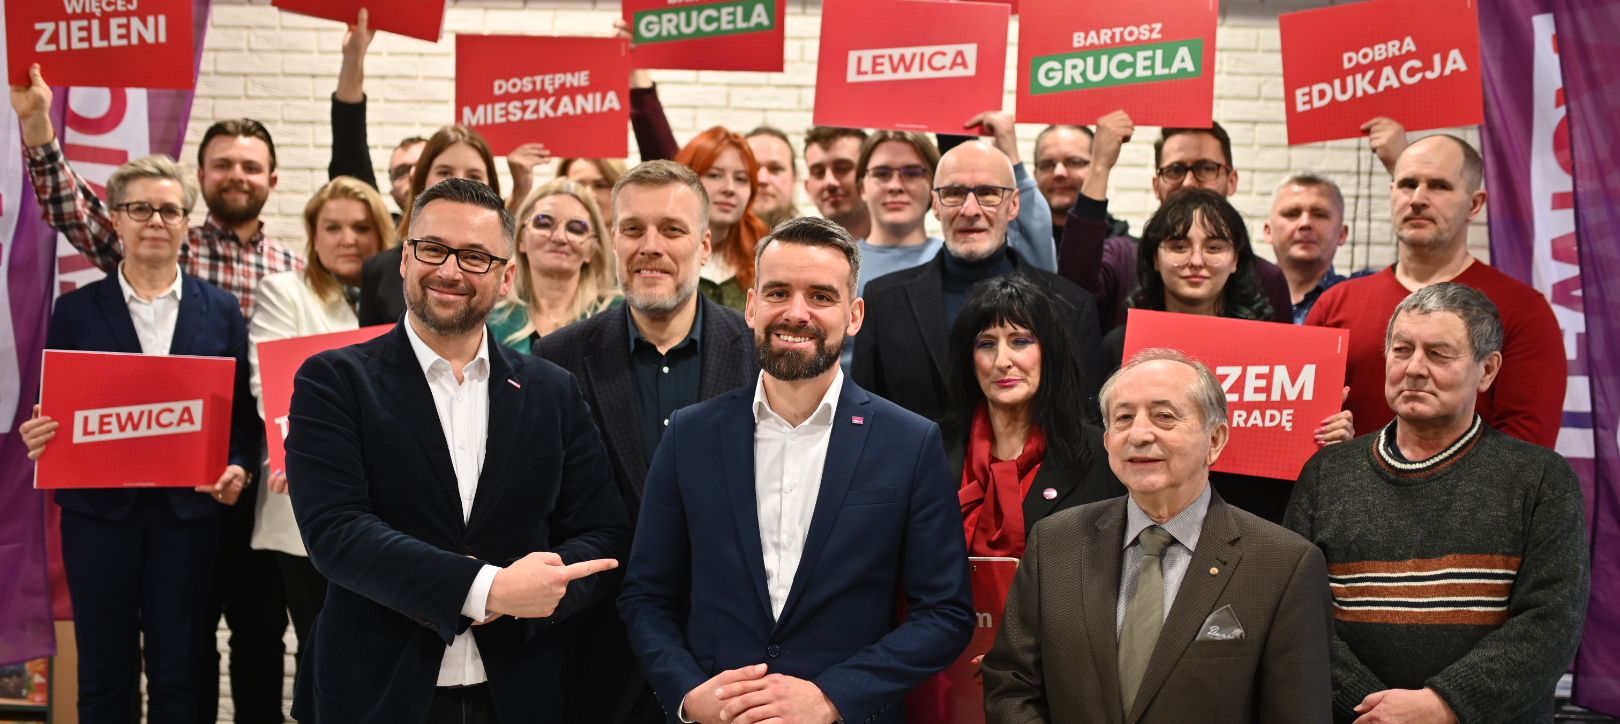 Bartosz Grucela kandydatem KKW Lewicy na prezydenta Olsztyna! - zdjęcie